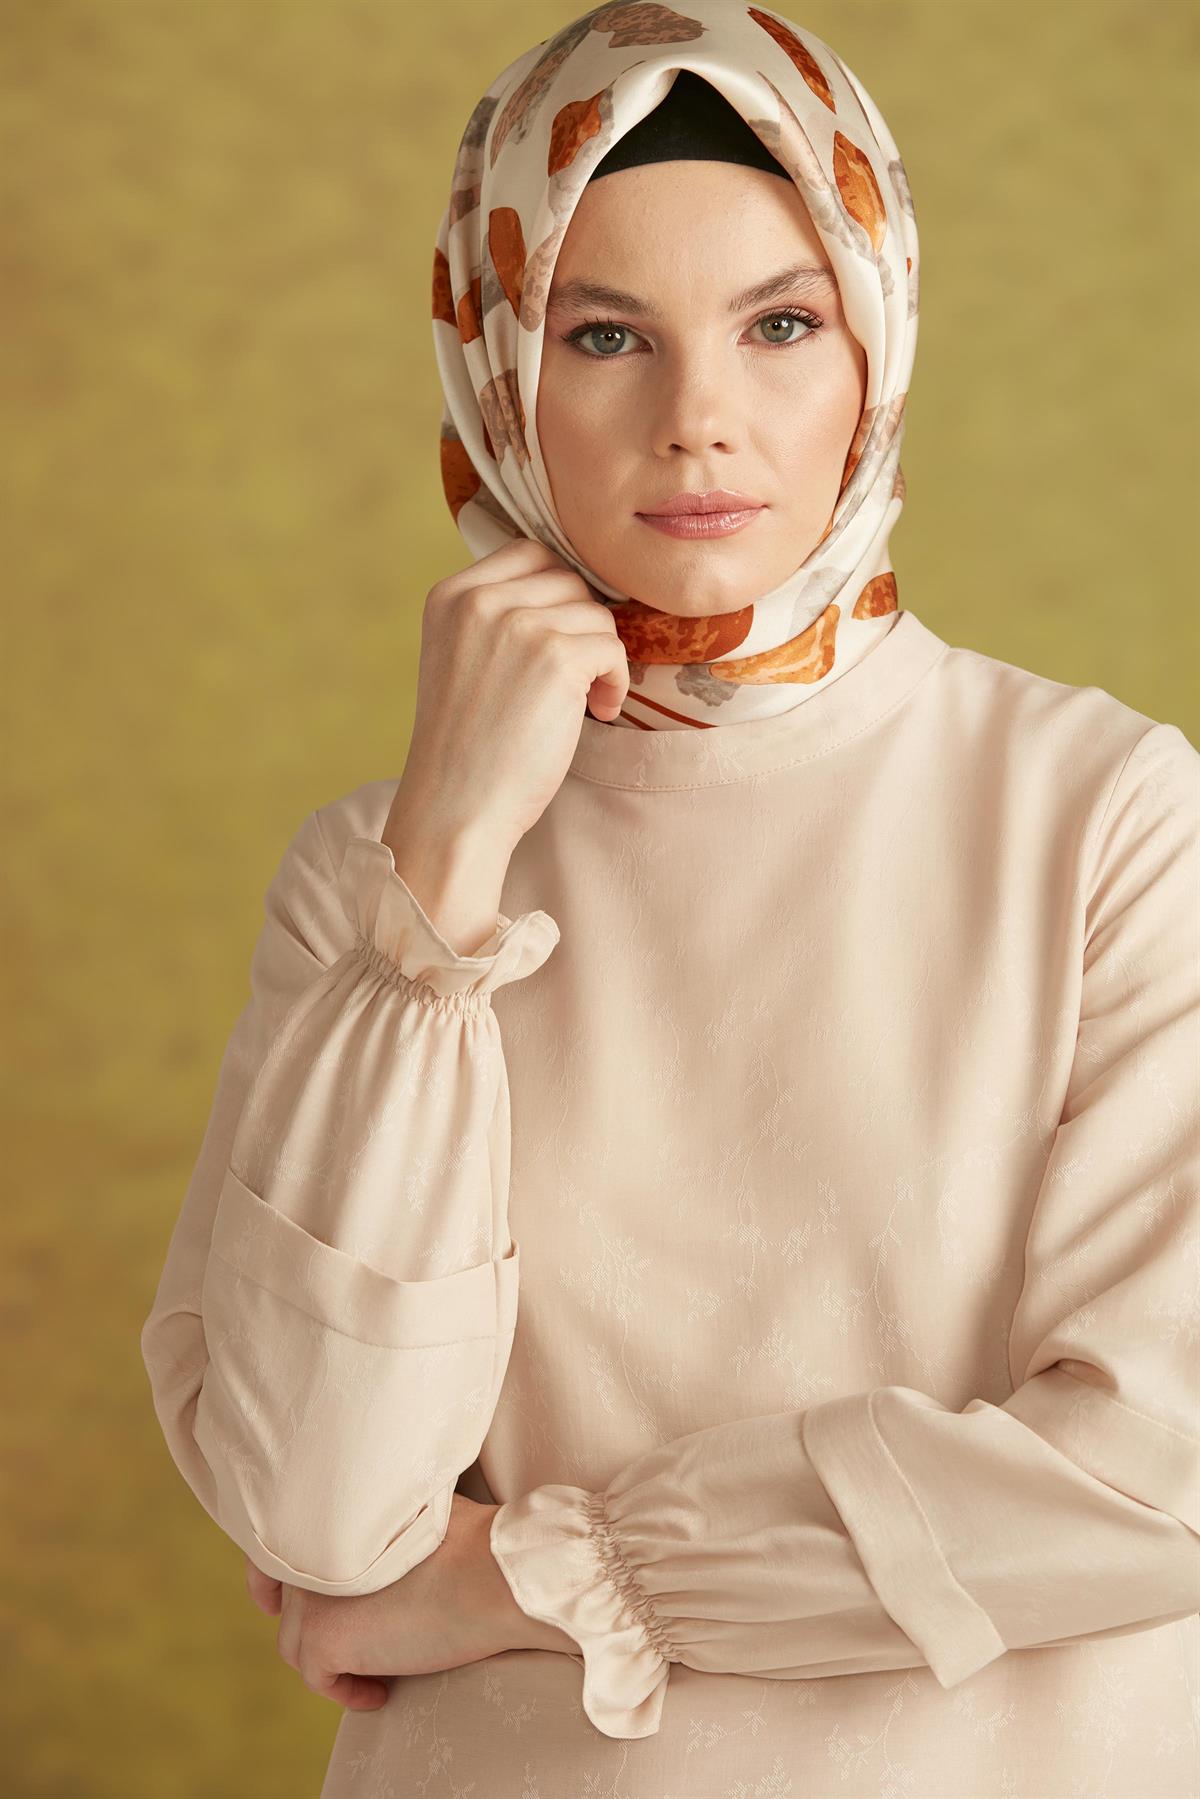 Tuğba Kadın Tunik Modelleri & Fiyatları | Tuğba Online